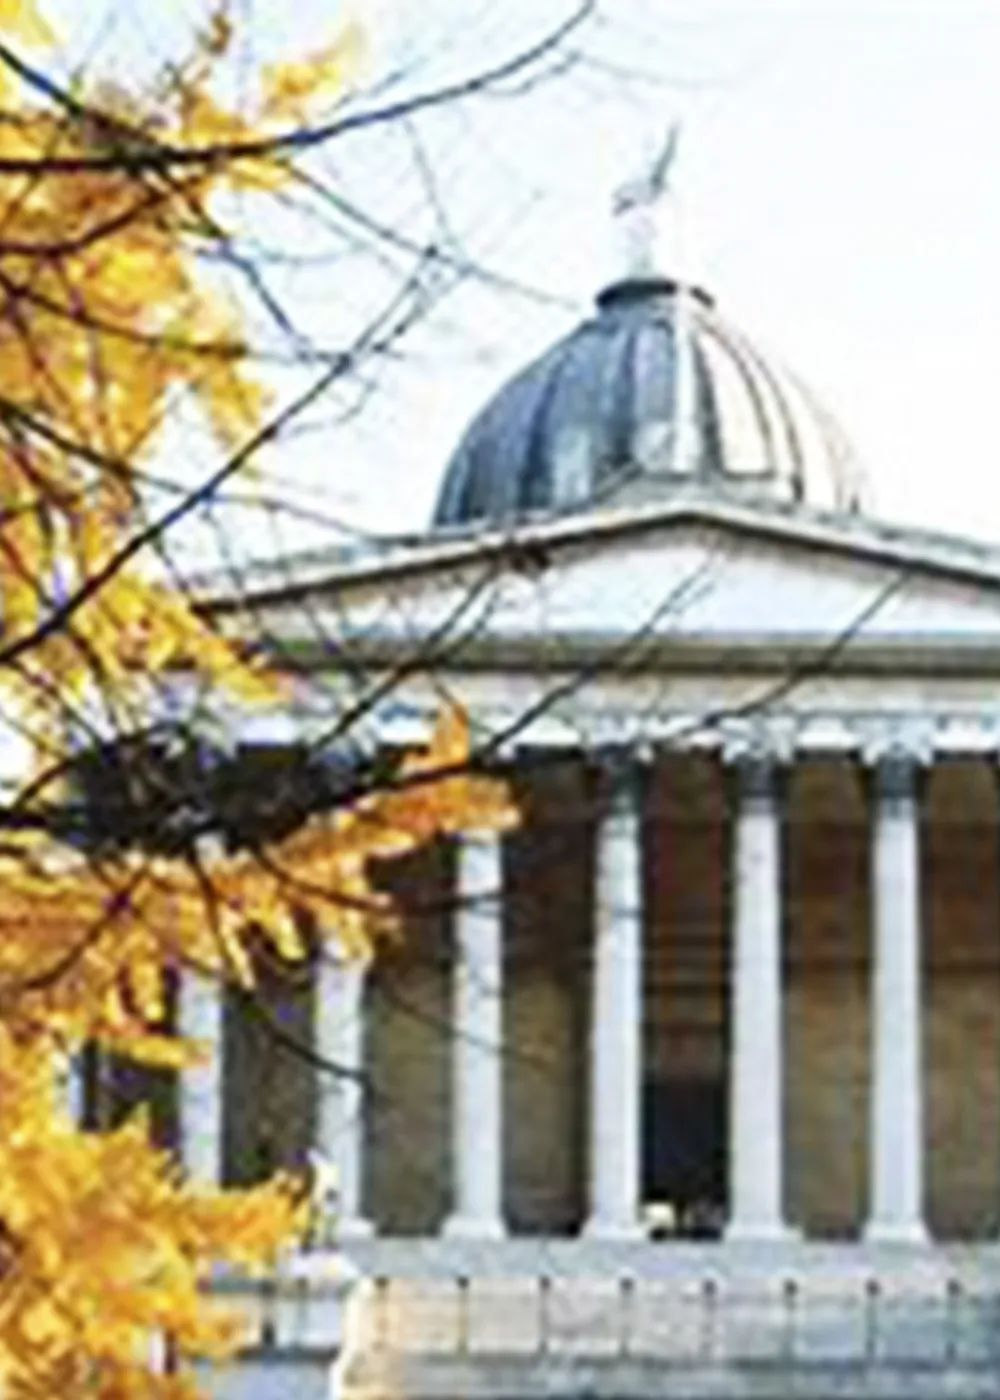 祝贺汤雯茹同学斩获全球排名第10的伦敦大学学院的录取offer